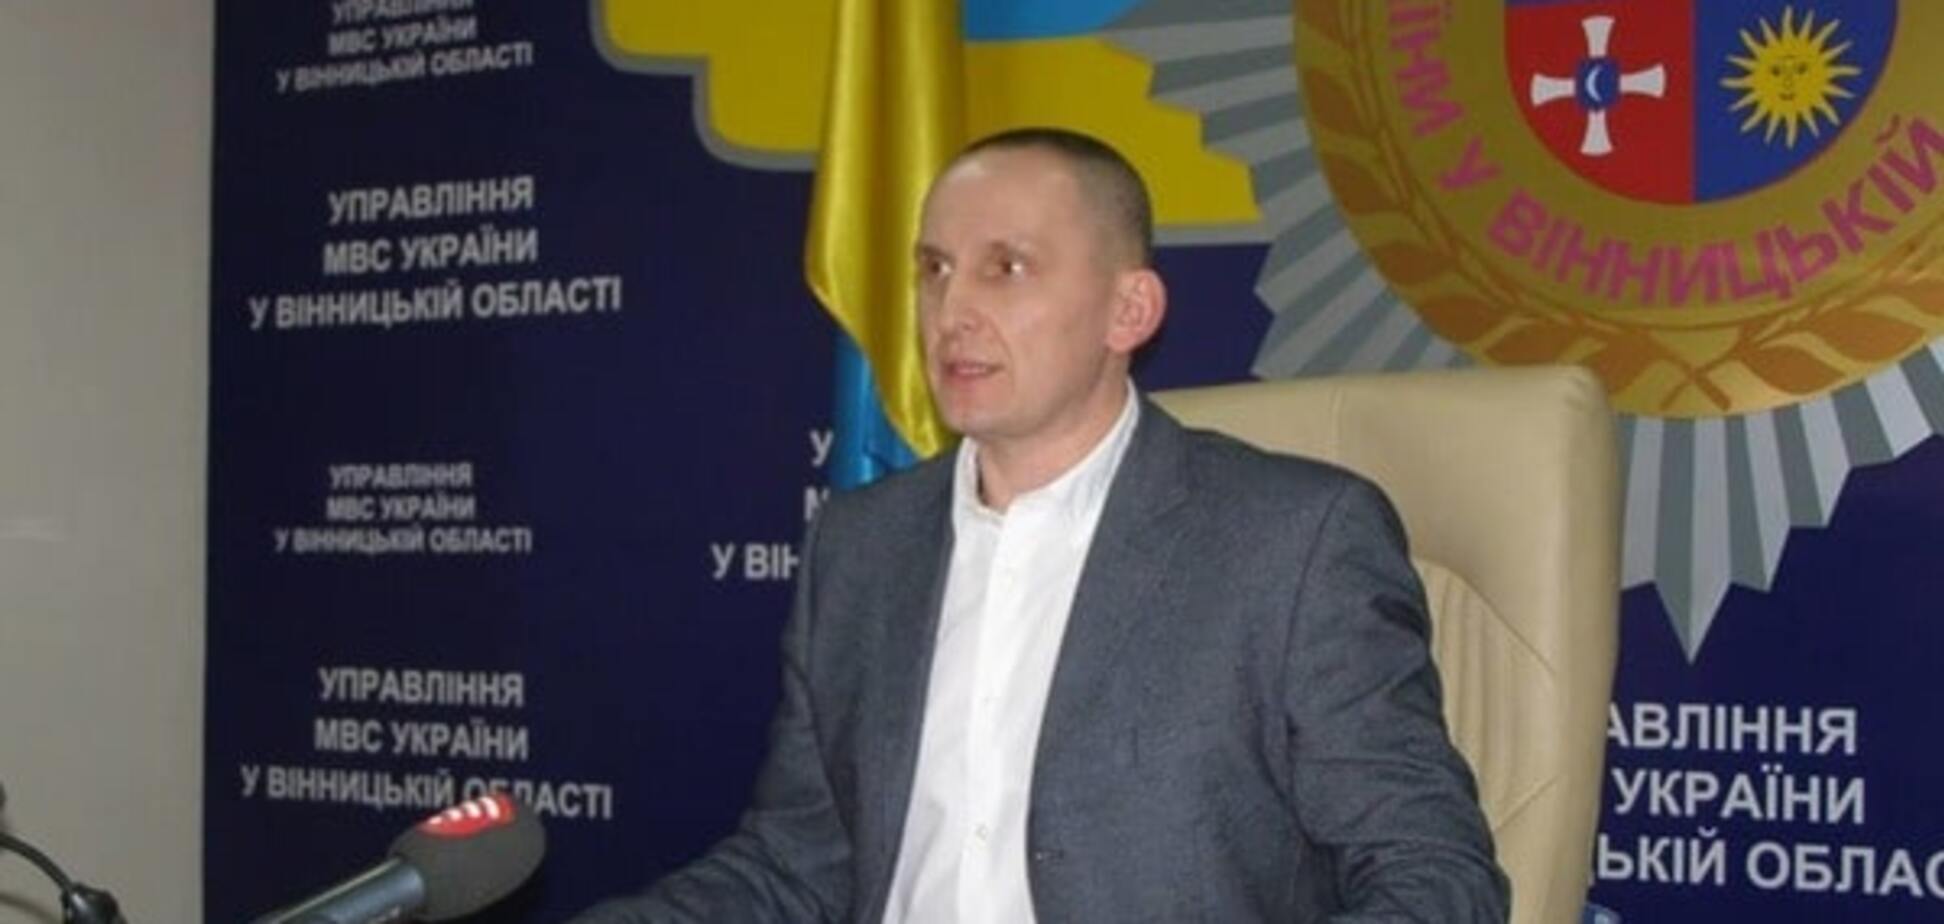 Шеф полиции Винницкой области уволен после 'сепаратистского' скандала